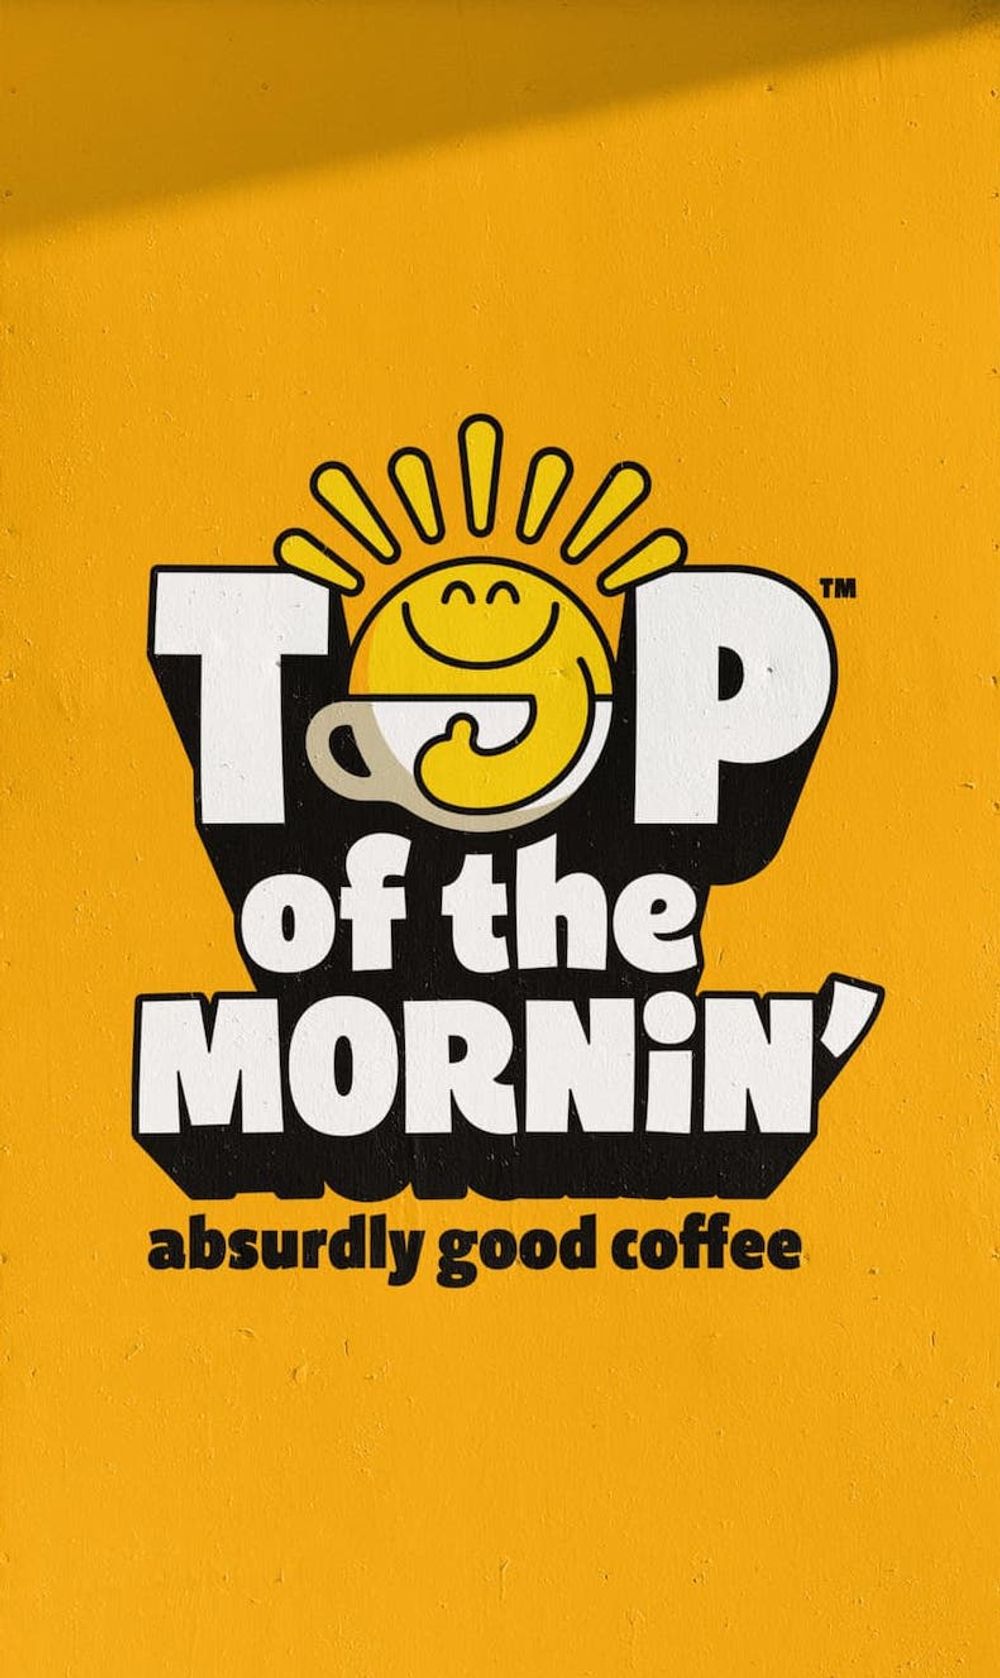 Hugh Thomas, CEO @ Top of the Mornin’ Coffee